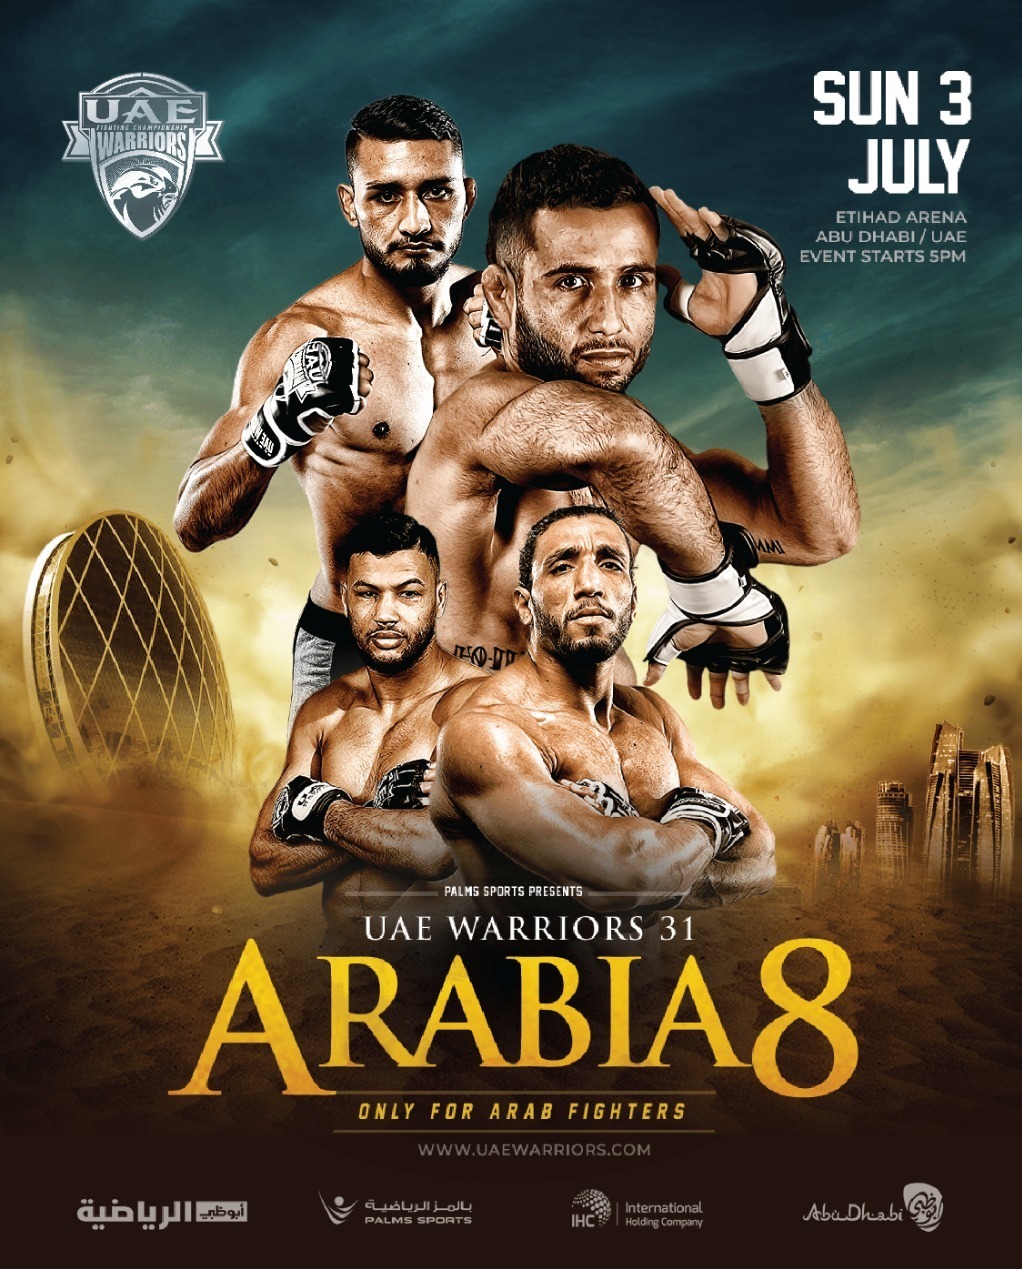 UAE Warriors 31 - Arabia 8